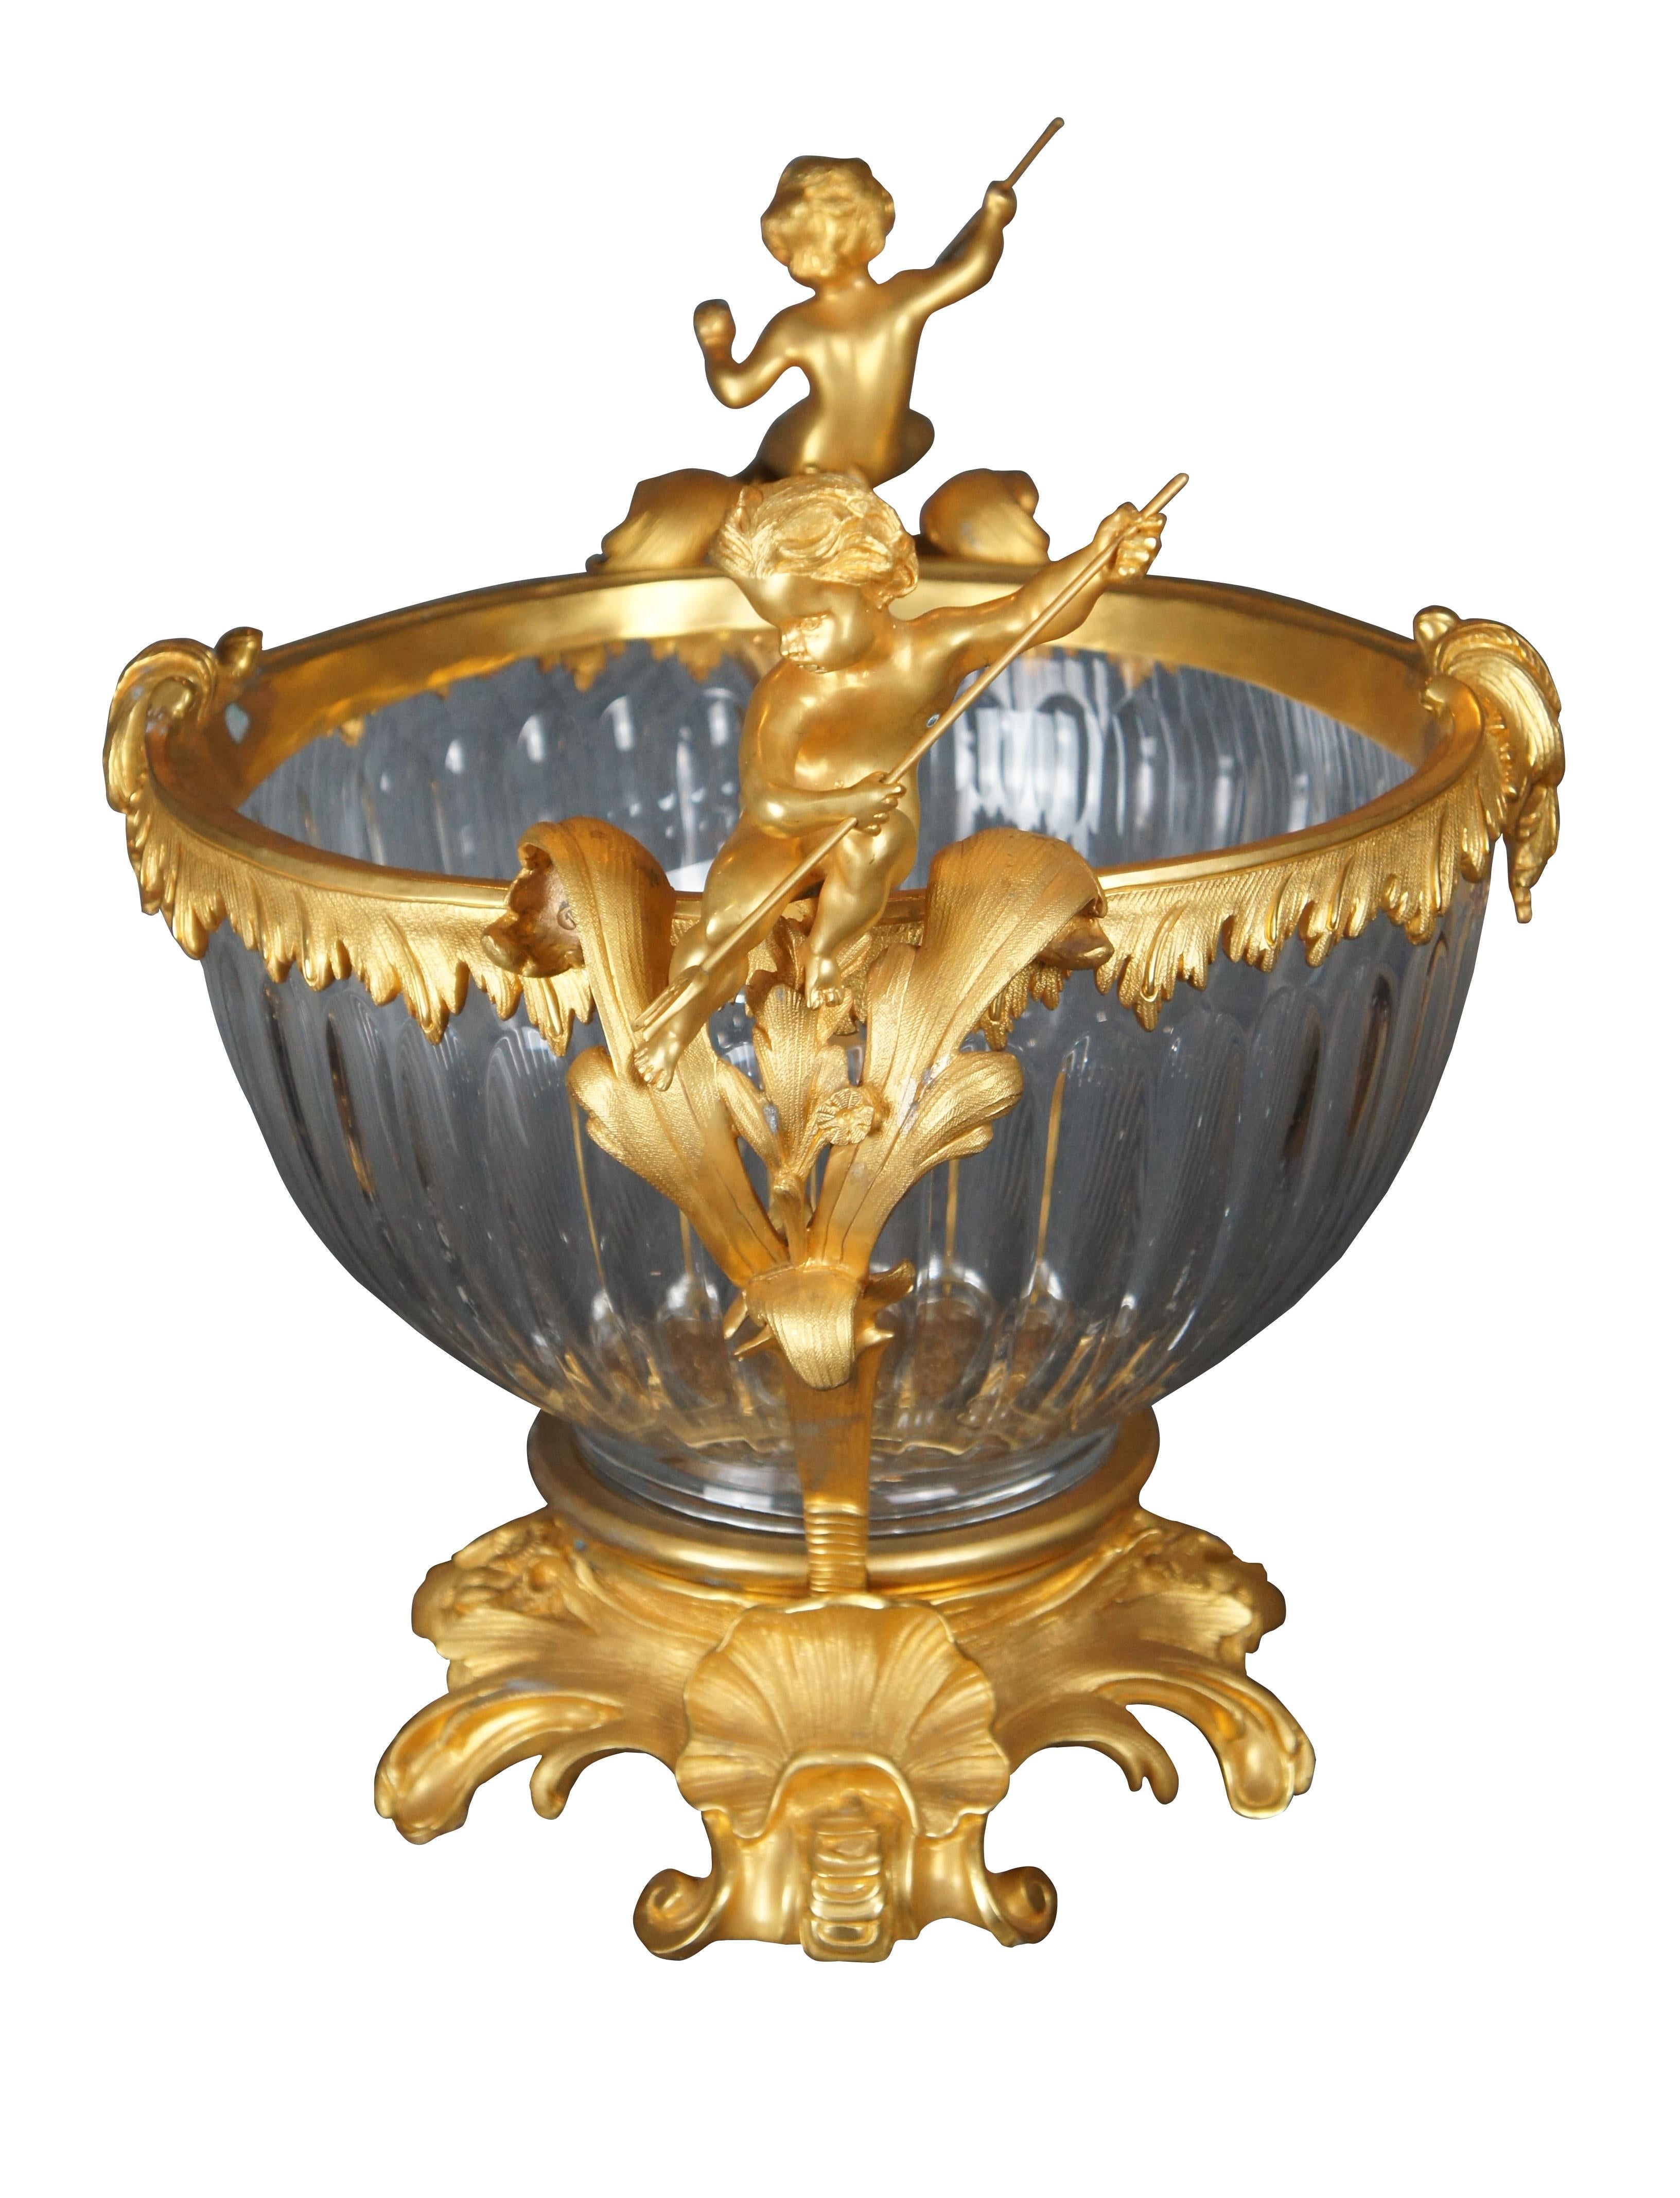 Eric Stepnewski Schale aus dem späten 20. Jahrhundert. Gefertigt aus gemeißeltem Messing und mit 24-karätigem Gold und Kristall veredelt. Perfekt geeignet als Champagnerschale oder einfach als dekorative Vase oder Tafelaufsatz. Der Korpus aus